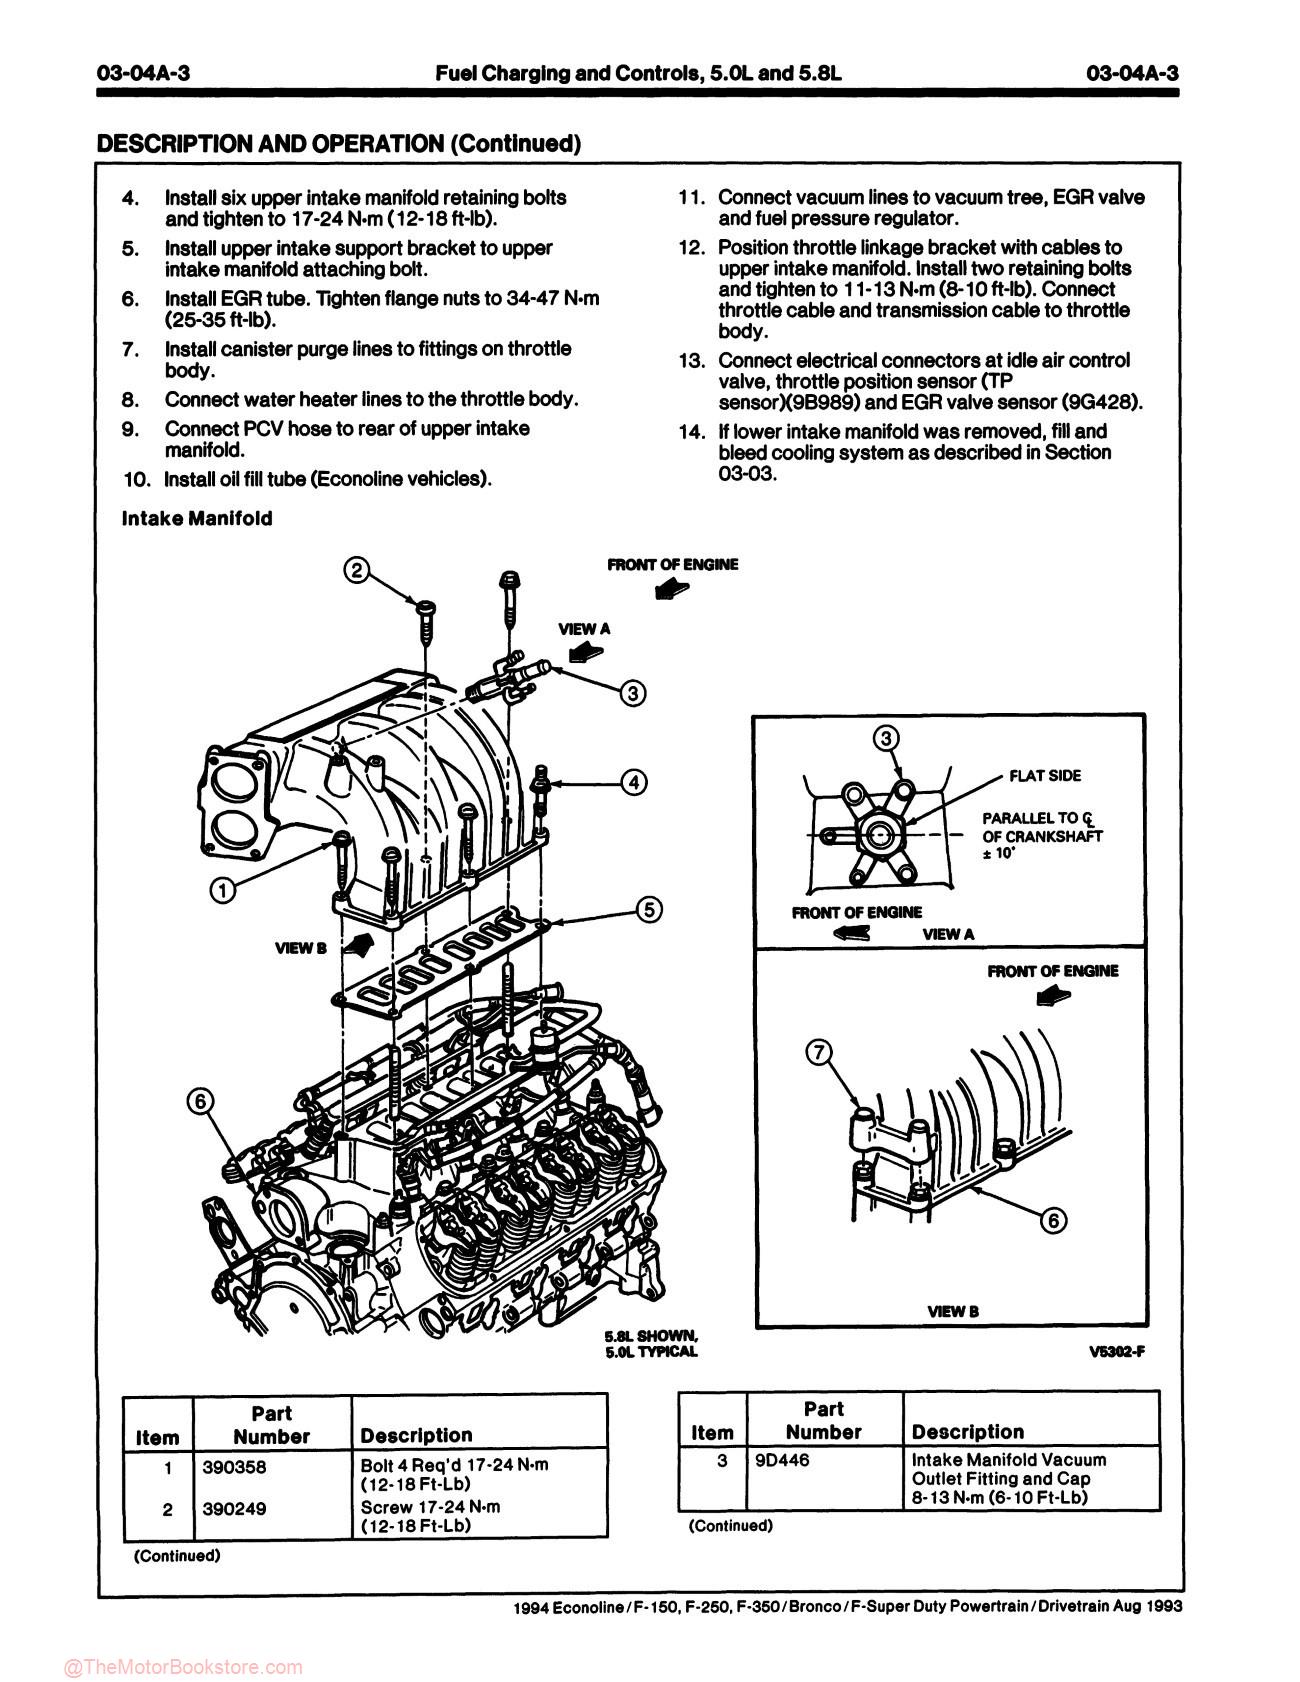 1994 Ford Truck Service Manual - F-150-350, F-Super Duty, Bronco, & Econoline - Sample Page 4